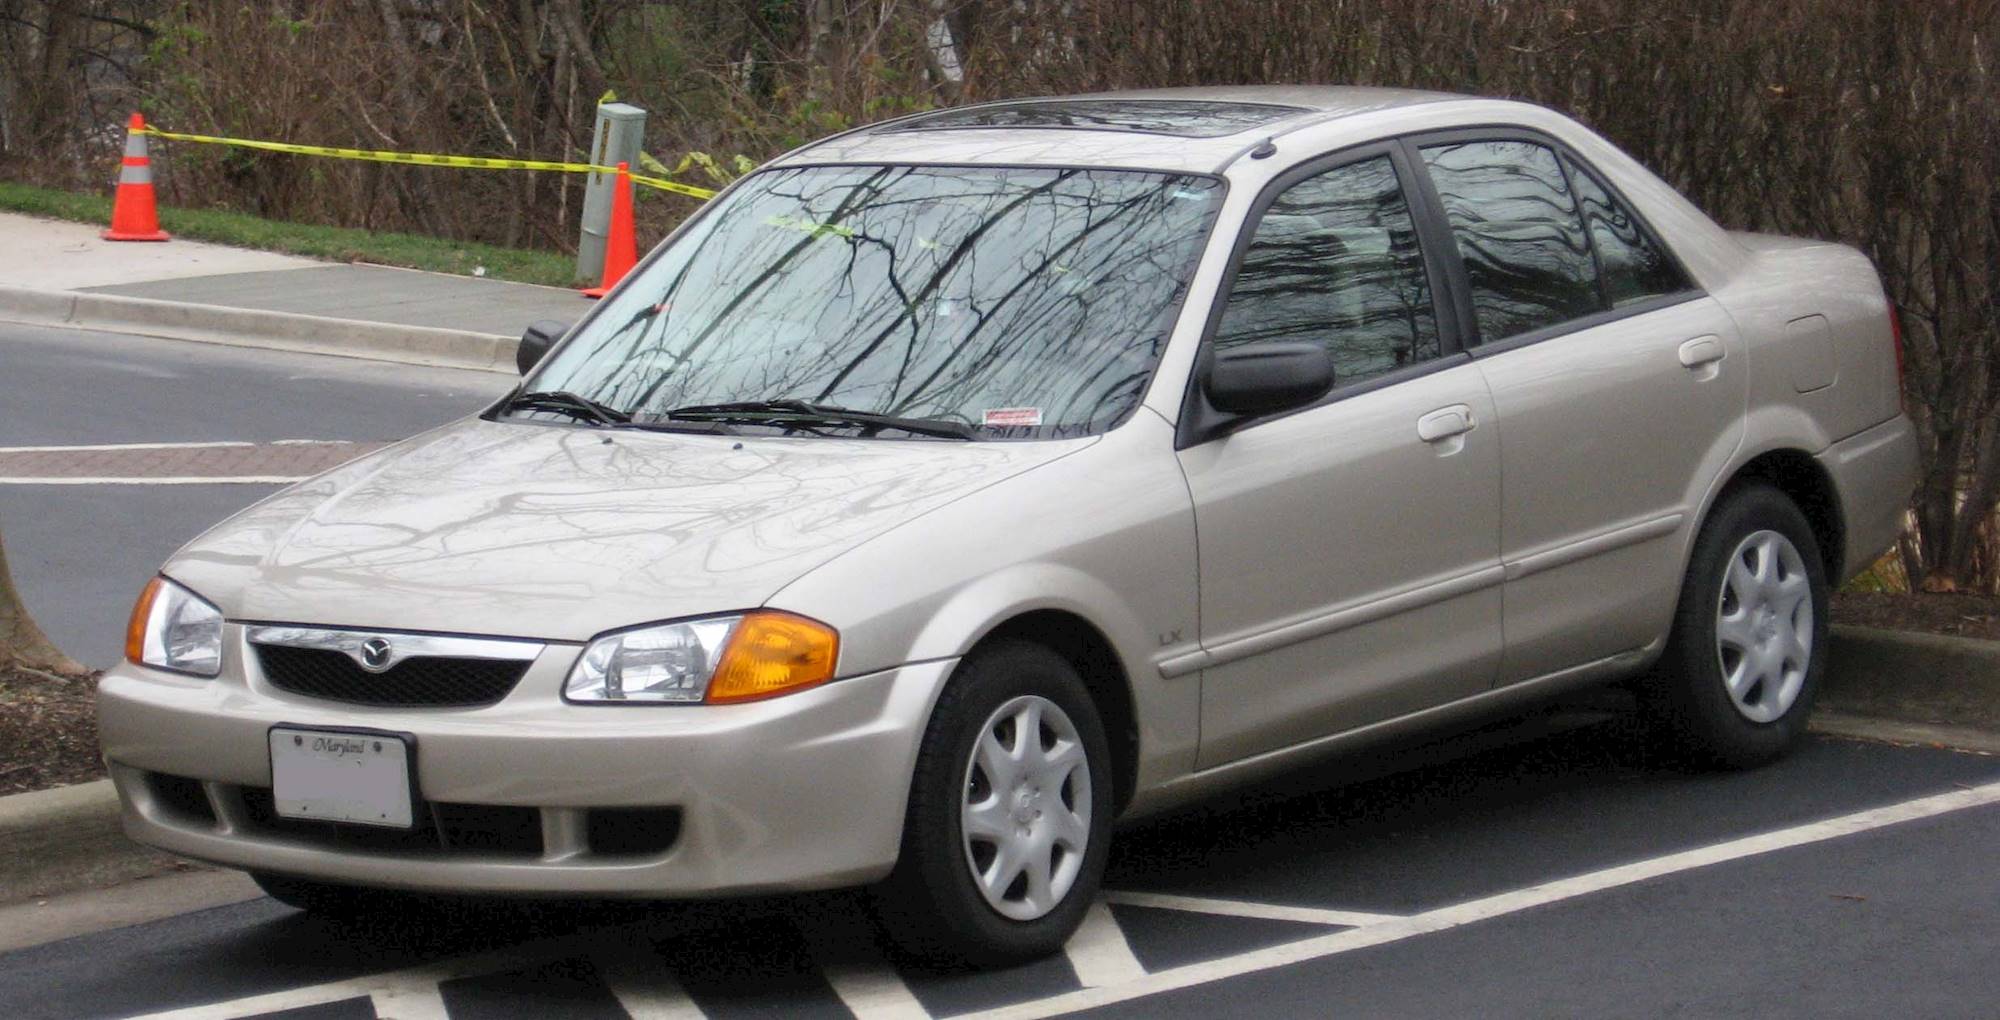 1999 Mazda Protege LX - Sedan 1.6L Manual